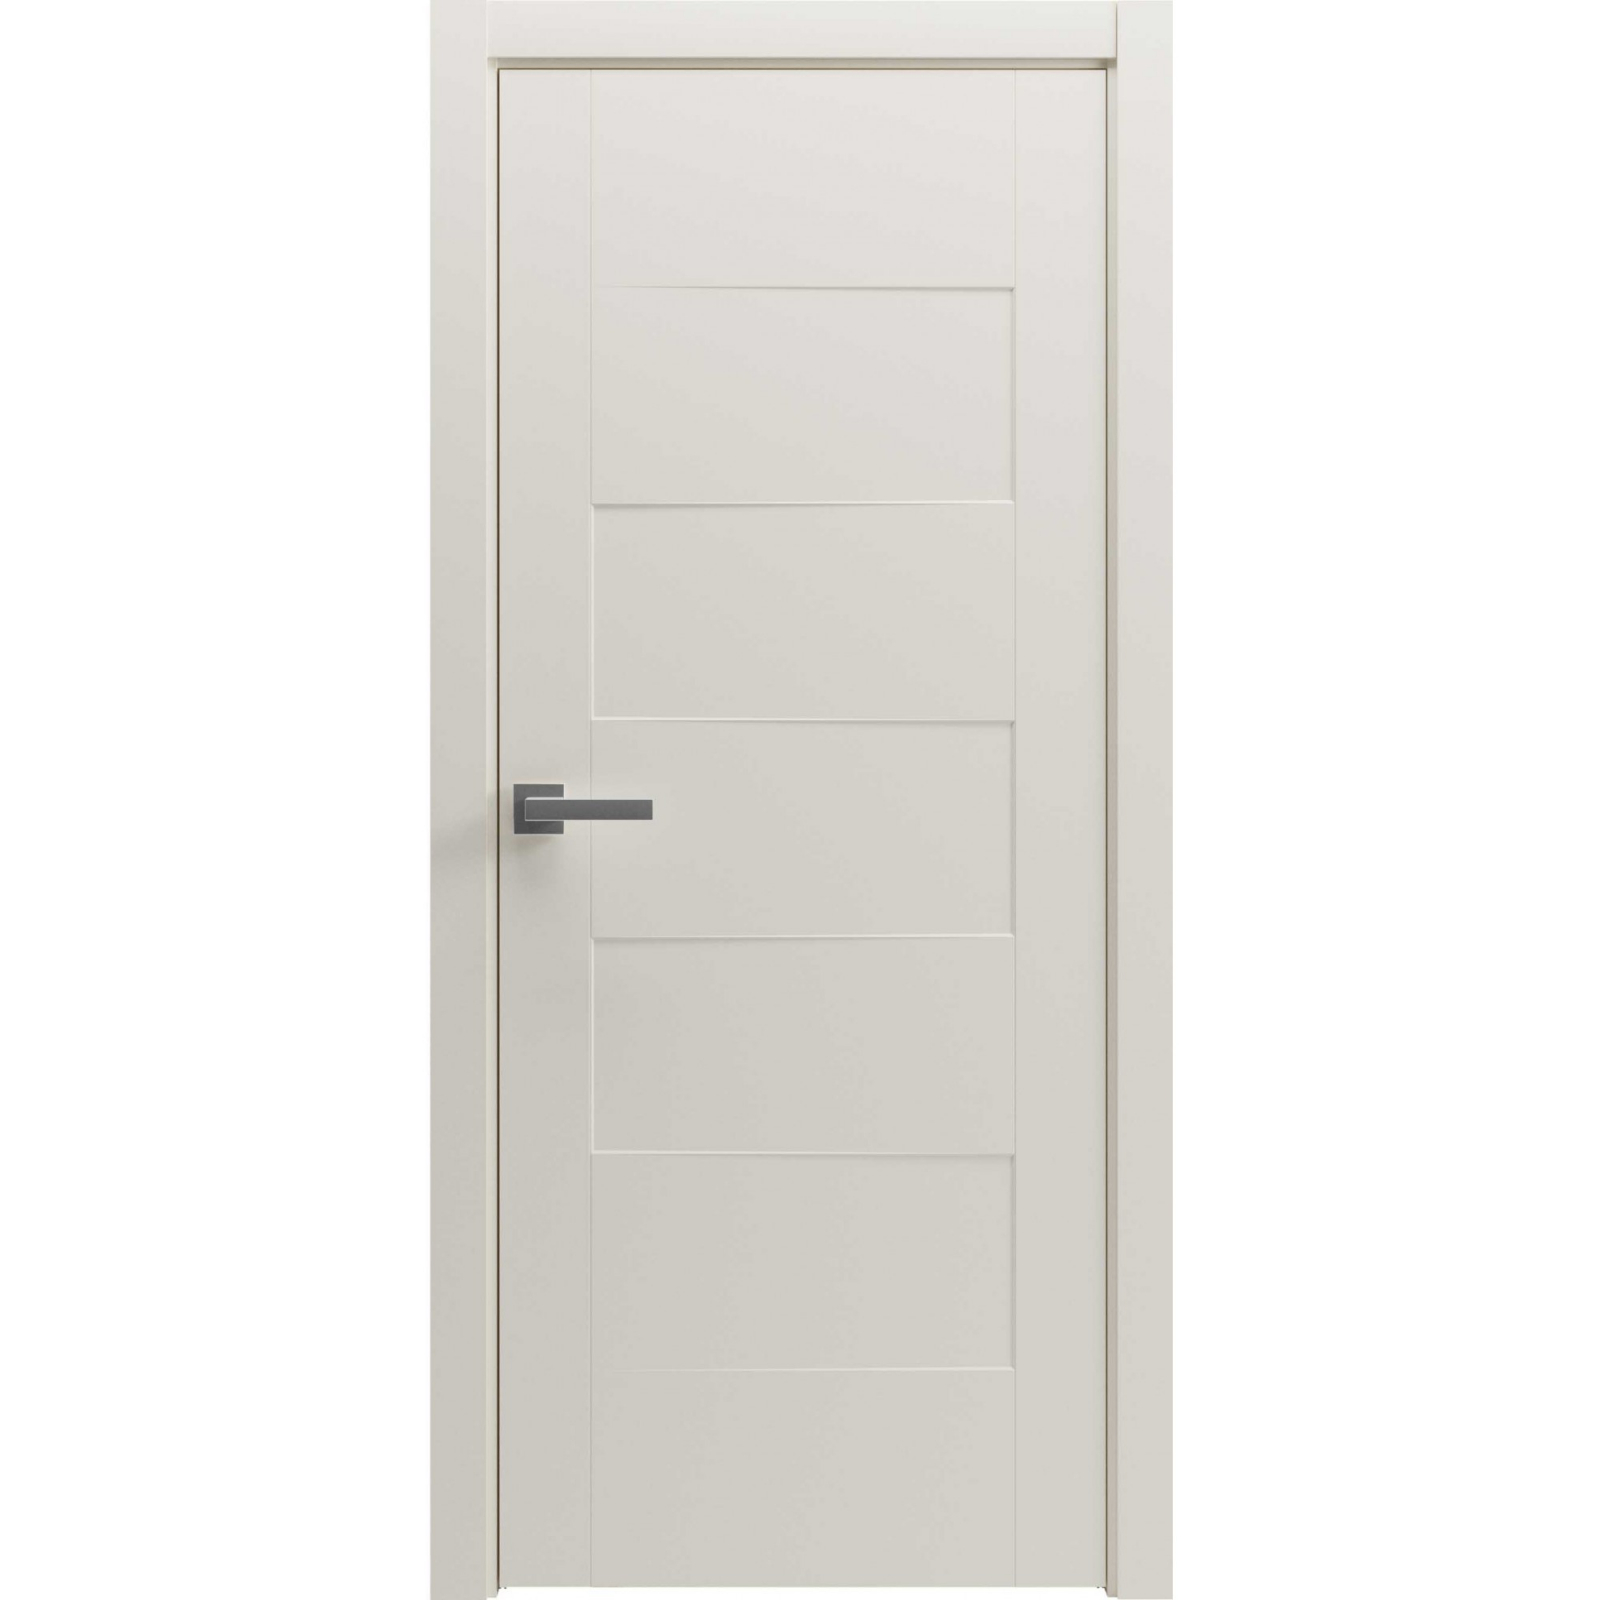 Леруа дверь со стеклом. Дверь межкомнатная Uberture 2127 софт Бьянка. Полотно дверное Verda ДПГ 600 беленый дуб. Межкомнатная дверь Лу-01 (беленый дуб). Межкомнатные двери молочный дуб.